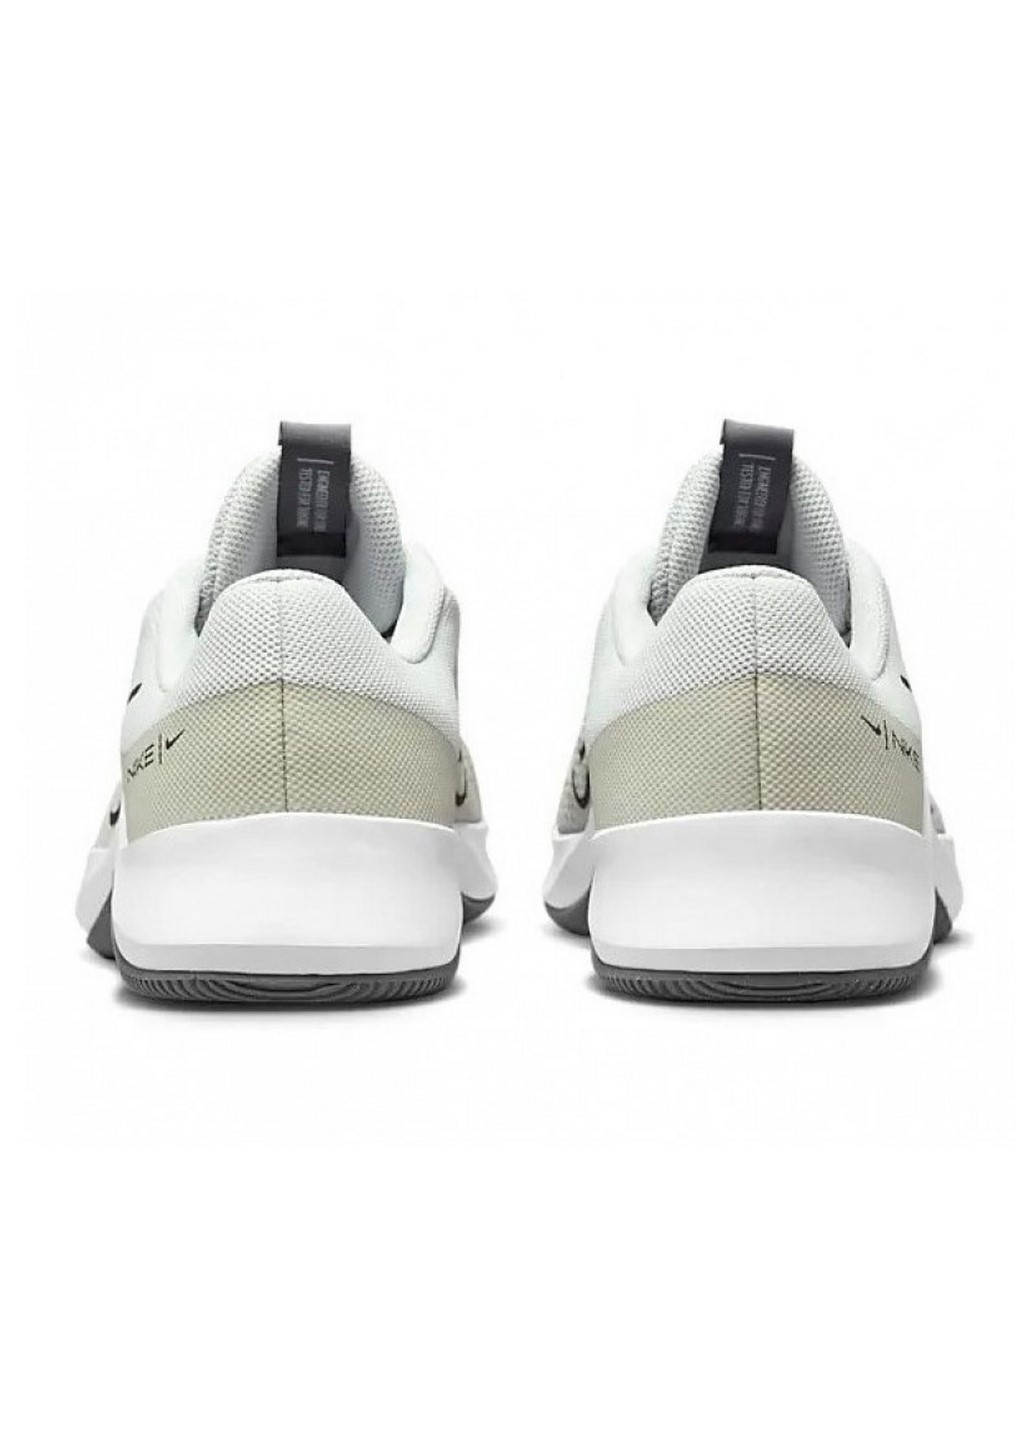 Серые всесезонные кроссовки мужские dm0823-004 Nike MC TRAINER 2